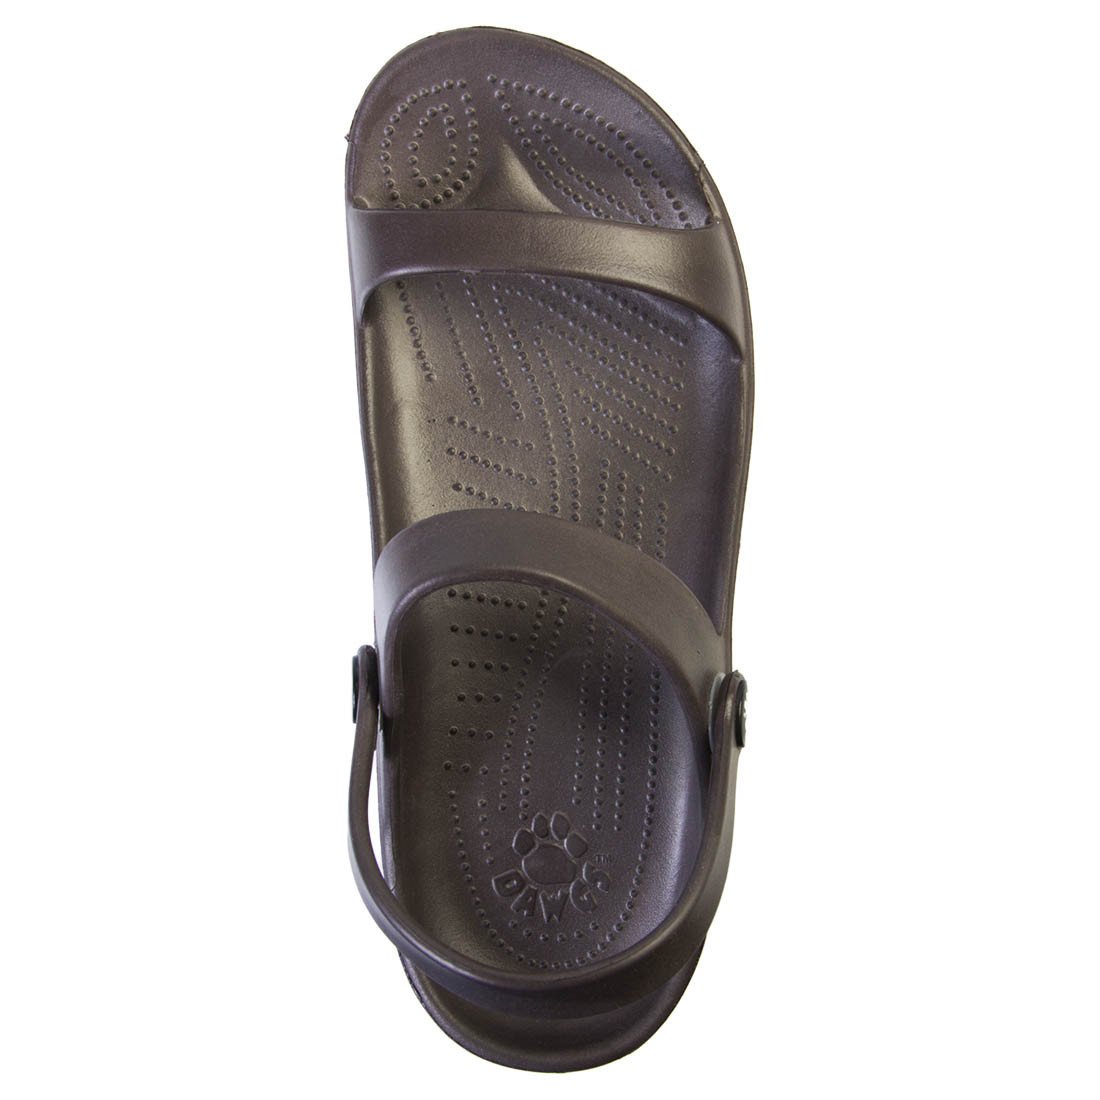 Women's 3-Strap Sandals - Dark Brown by DAWGS USA